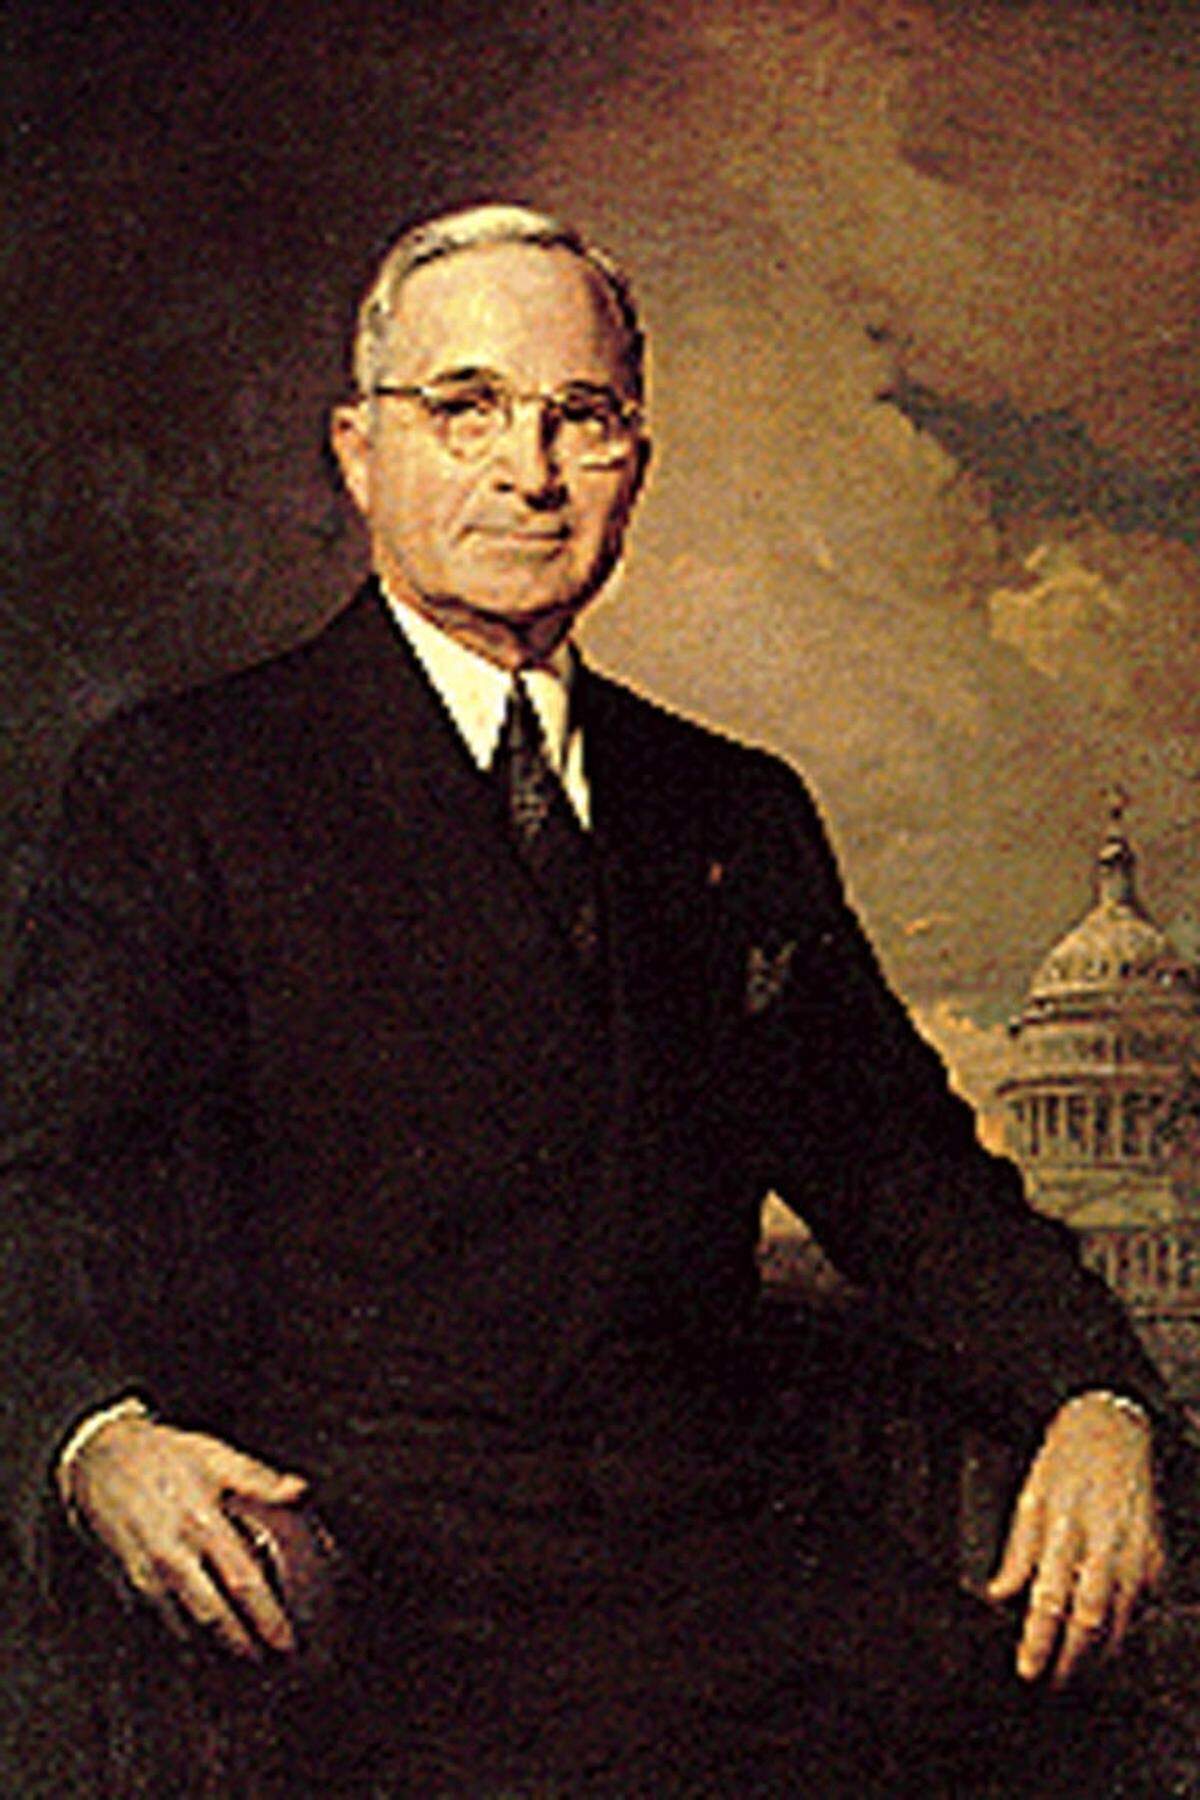 Der US-Präsident (1945-51) wurde als Offizier im Sommer 1918 in Frankreich eingesetzt, wo er seine Einheit bei einem Überraschungsangriff der Deutschen mit dem Einsatz von Kraftausdrücken, die man von ihm nicht gewohnt war, von der Flucht abhalten konnte. Im September 1918 wartete er entgegen einem entsprechenden Befehl mit einem Angriff zu und verhinderte so vermutlich Todesopfer in eigenen Reihen. So gelang ihm das Kunststück, dass seine Batterie keinen einzigen Mann im Krieg verlor. Trumans Nachfolger als US-Präsident, der Kriegsheld Dwight D. Eisenhower, blieb ein Kriegseinsatz in Europa entgegen seinem innigen Wunsch verwehrt. Obwohl er gleich nach dem Kriegseintritt im April 1917 um eine Verlegung nach Übersee ersuchte, sollte es erst im November 1918 so weit sein. Doch kam der Waffenstillstand der geplanten Verlegung um nur eine Woche zuvor.